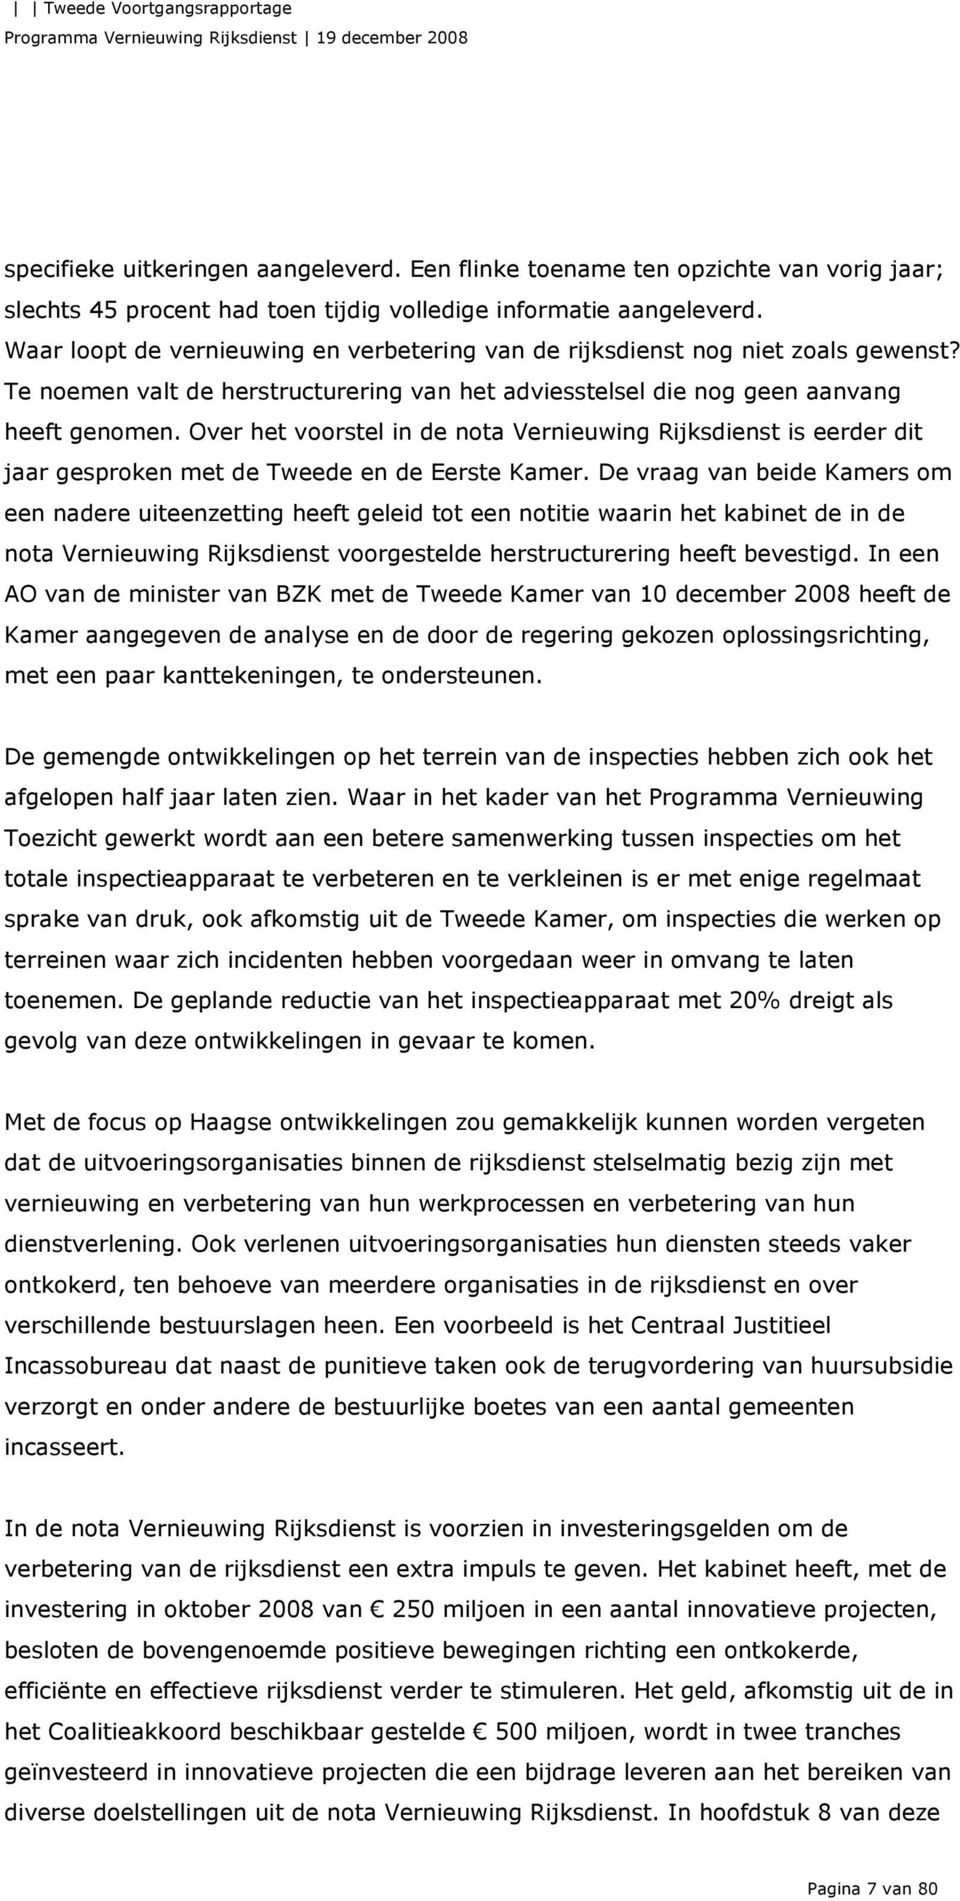 Over het voorstel in de nota Vernieuwing Rijksdienst is eerder dit jaar gesproken met de Tweede en de Eerste Kamer.